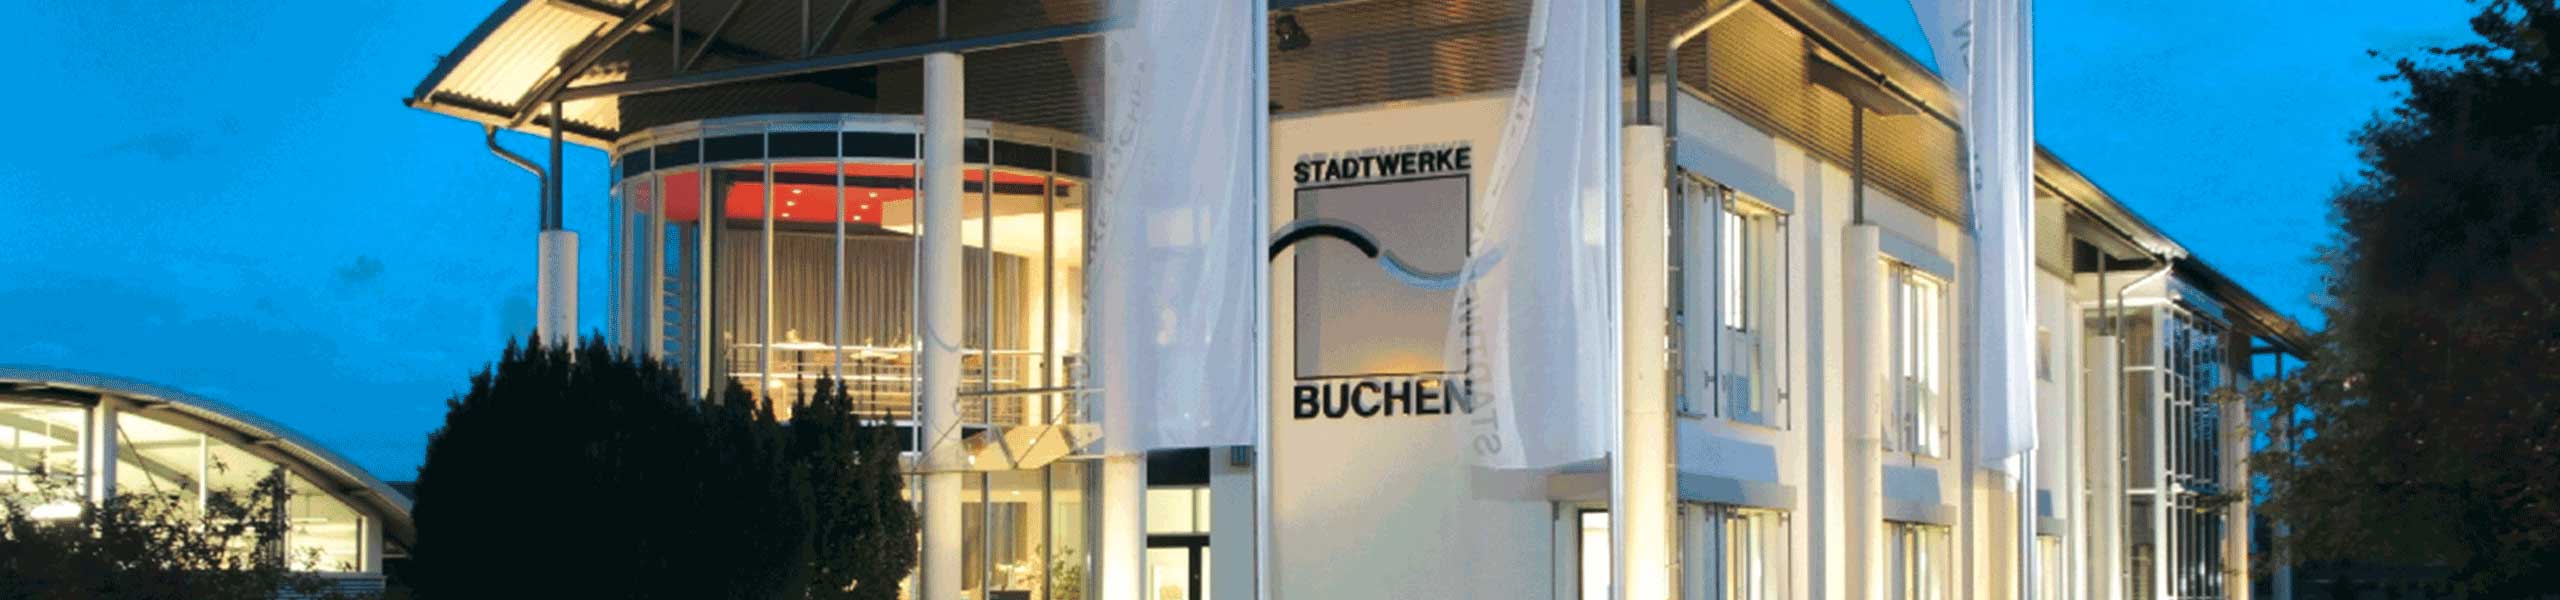 Stadtwerke Buchen GmbH & Co KG - Ihr Versorger vor Ort - Downloads